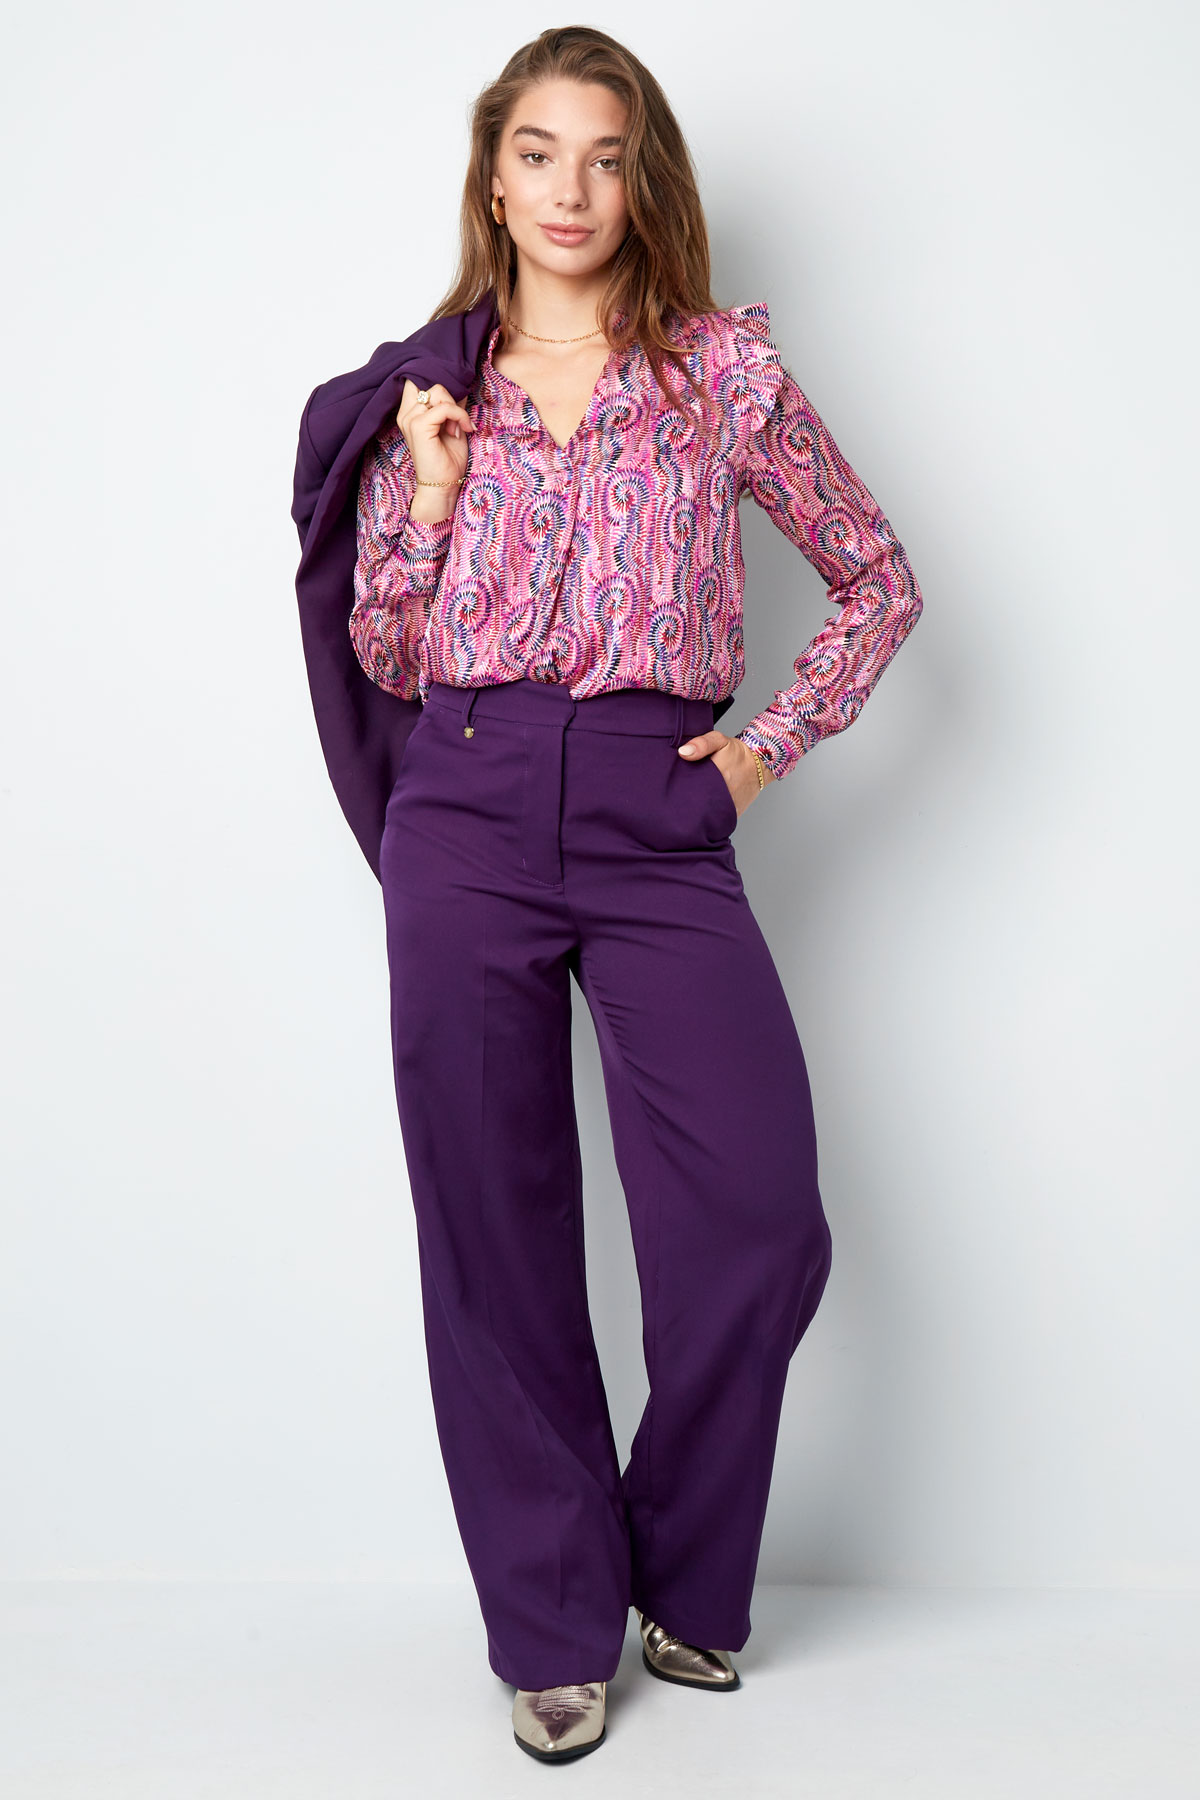 Pantalón plisado - violeta h5 Imagen9